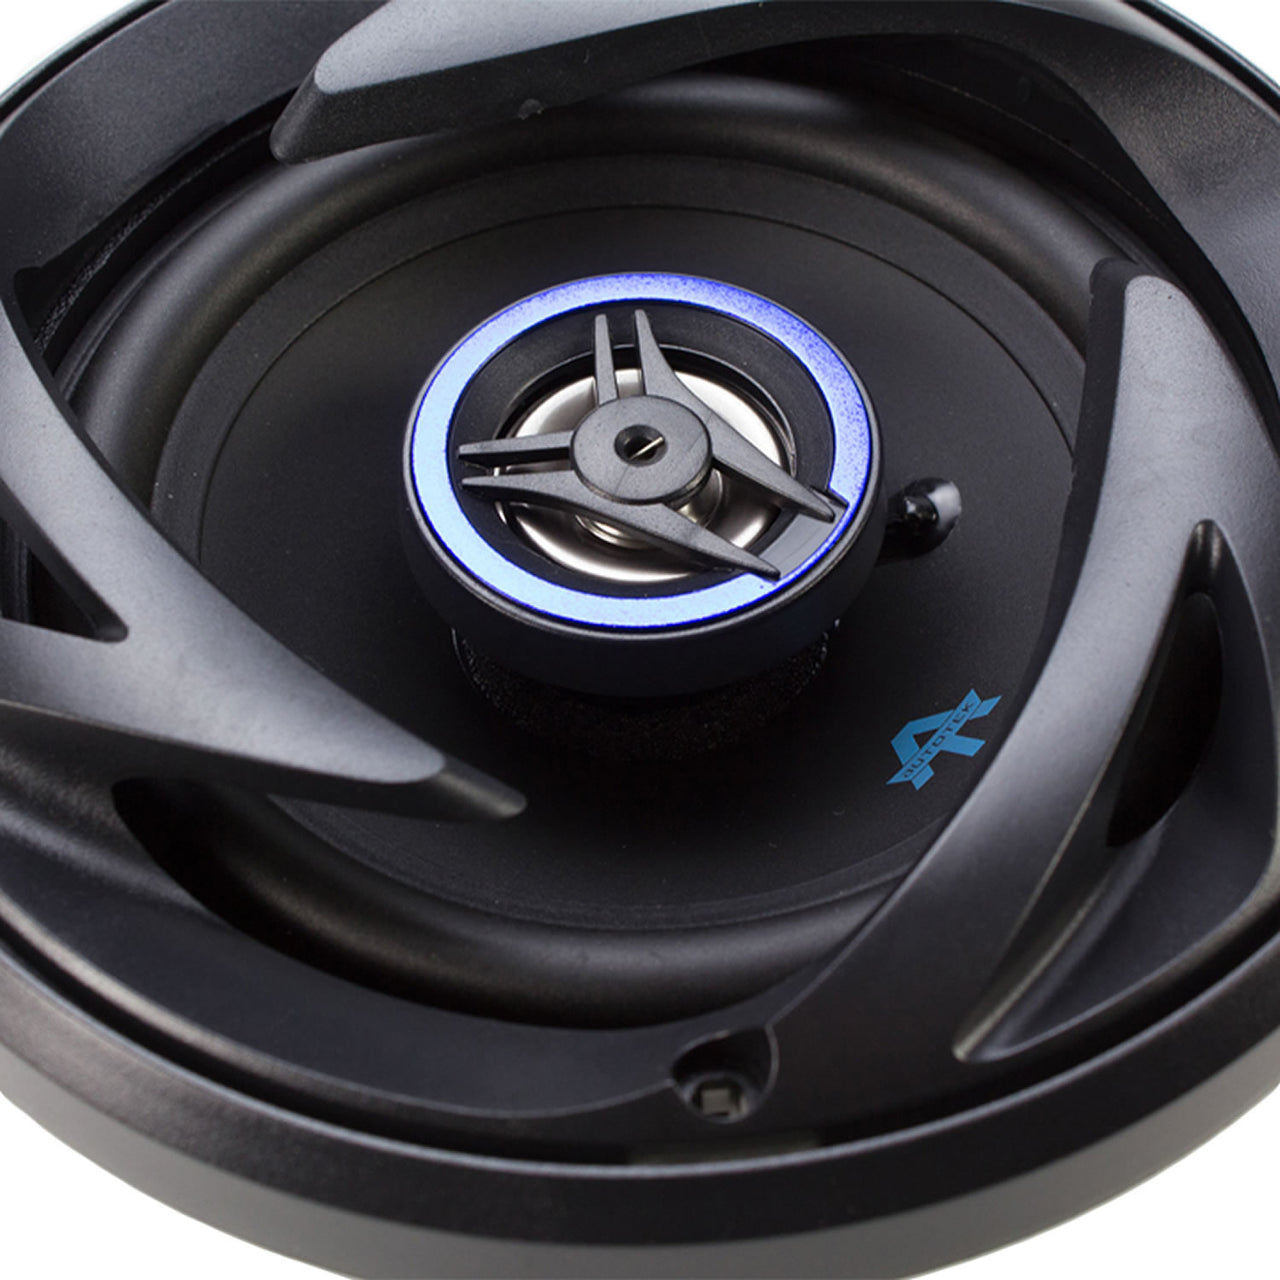 AUTOTEK ATS525CX 250W 5-1/4" 2-Way ATS Series Coaxial Car Speakers